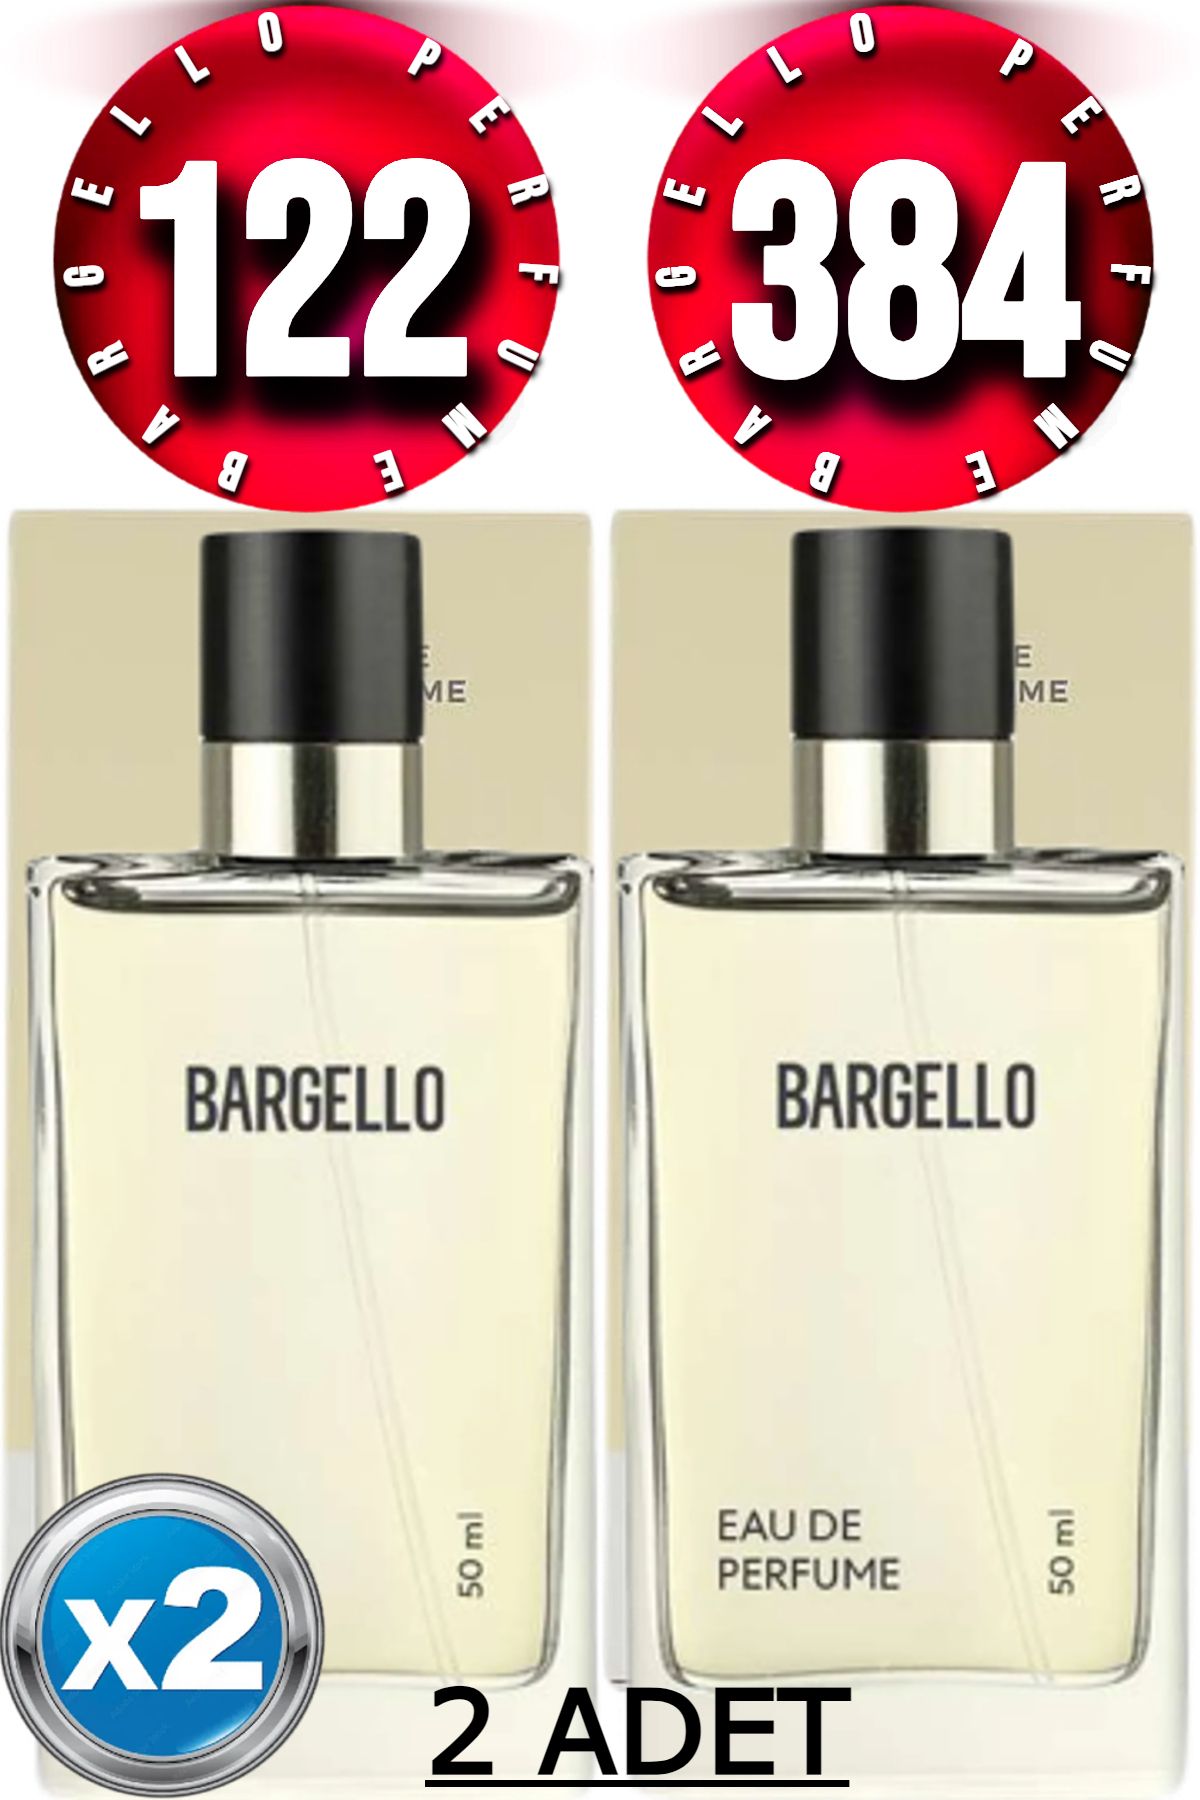 Bargello 122 Kadın Parfüm Oriental 50 ml Edp 384 Kadın Parfüm Floral 50 ml Edp 2 Adet Ürün